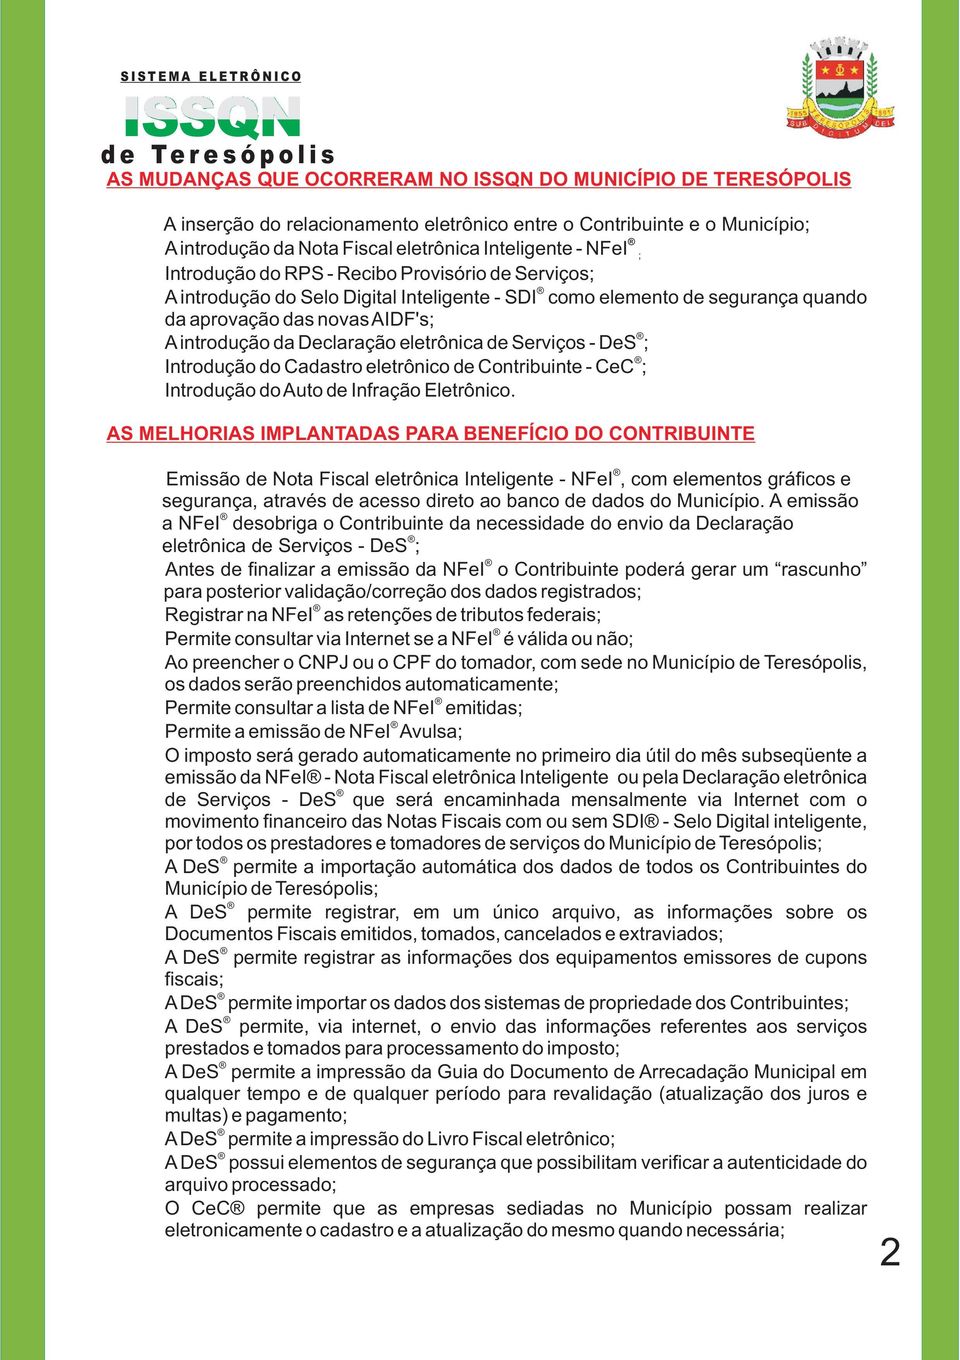 AIDF's; A introdução da Declaração eletrônica de Serviços - DeS ; Introdução do Cadastro eletrônico de Contribuinte - CeC ; Introdução do Auto de Infração Eletrônico.